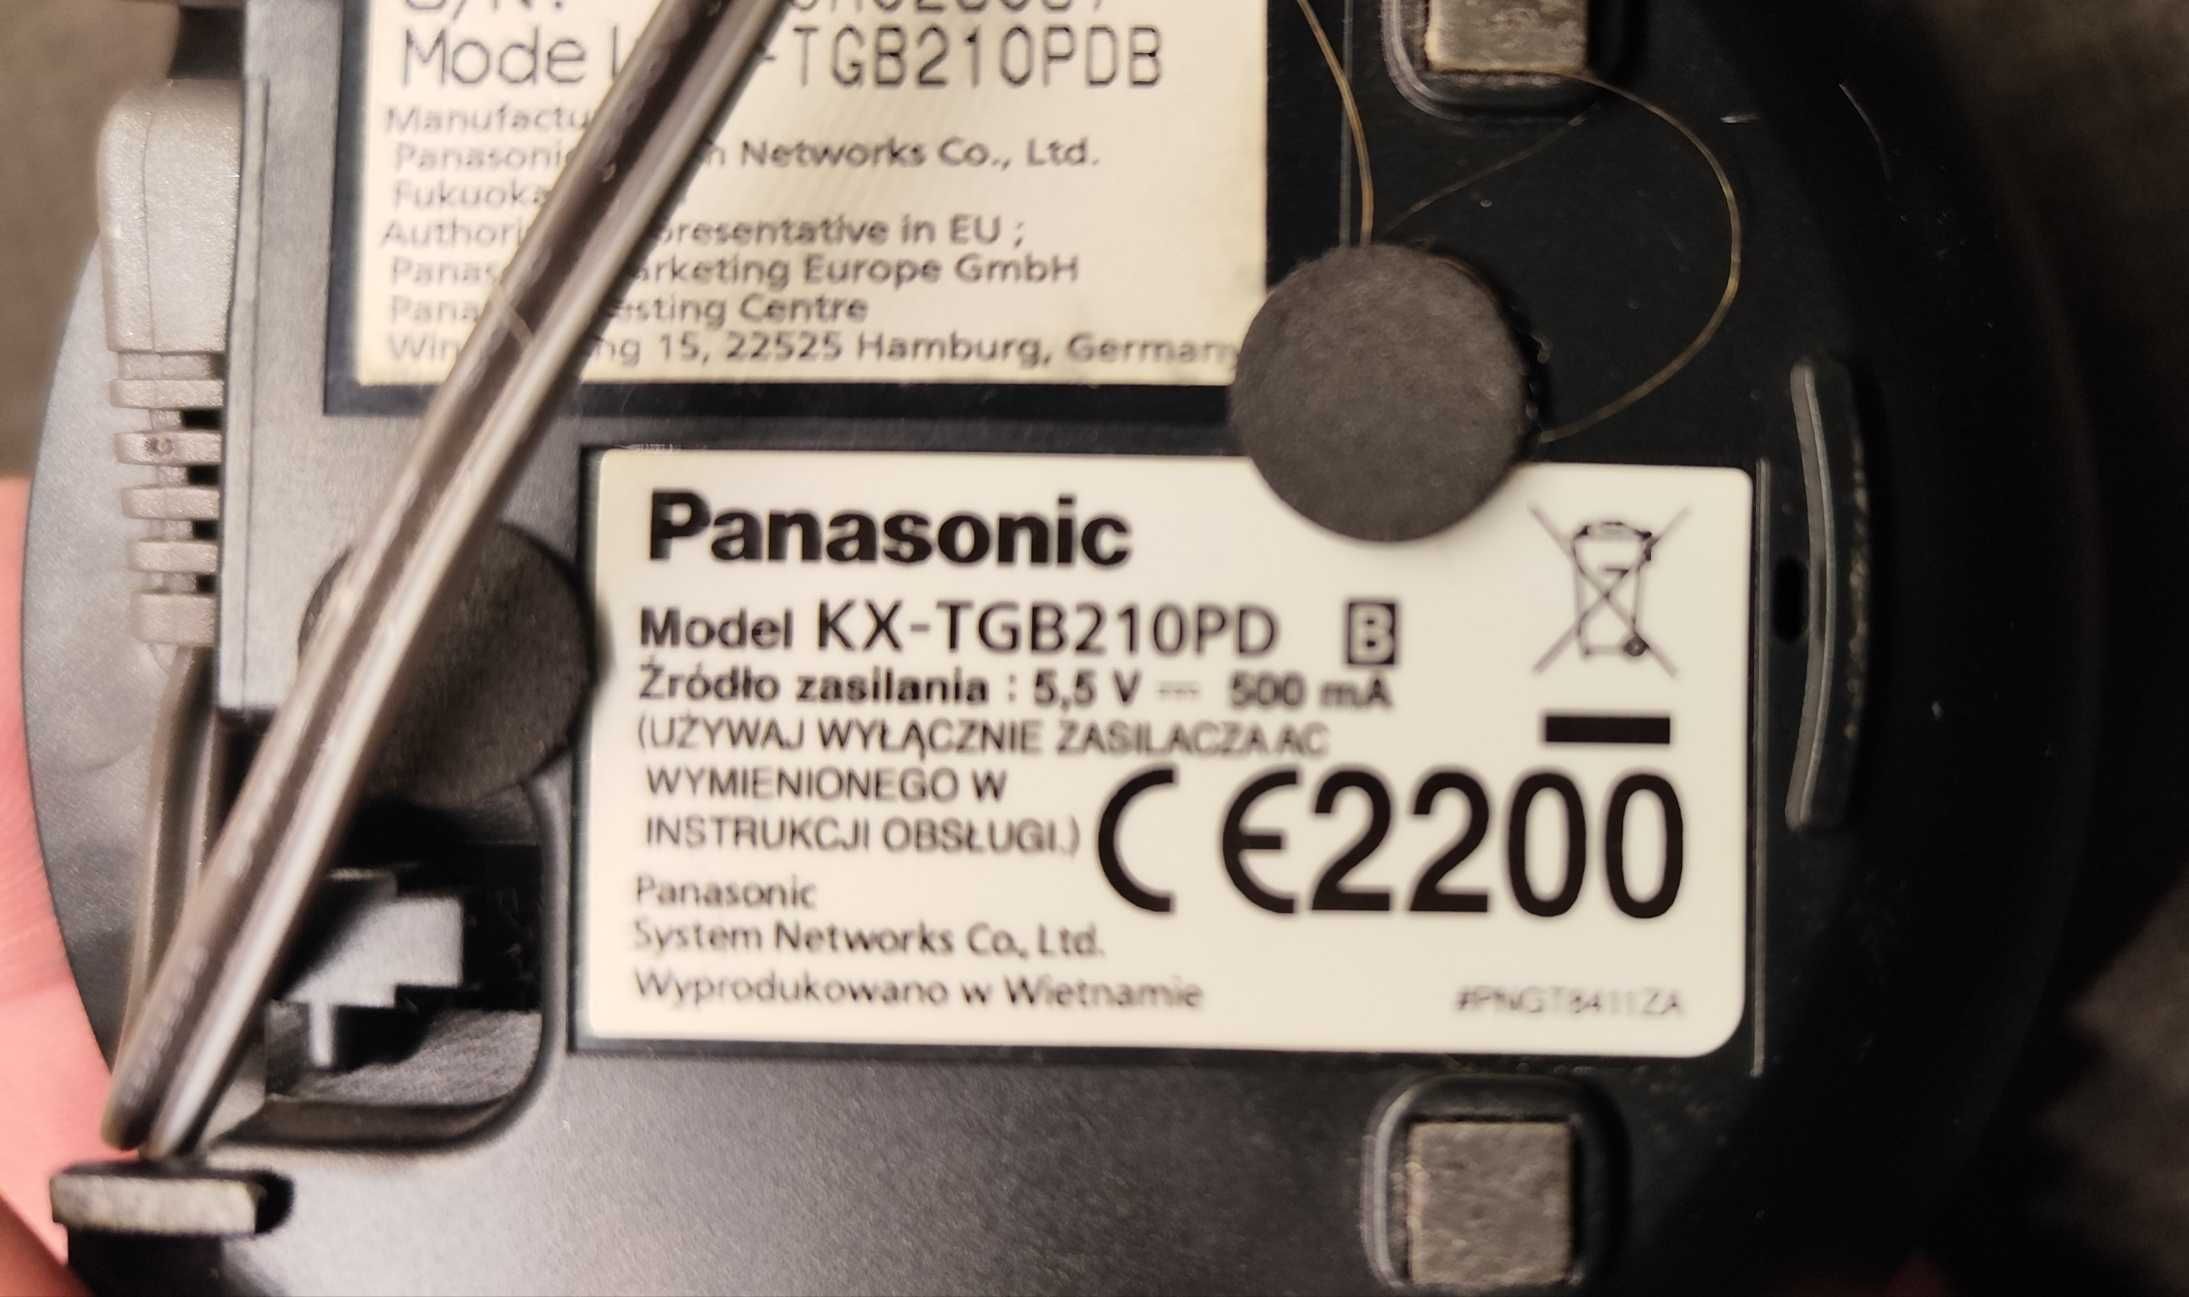 Sprzedam telefon stacjonarny bezprzewodowy Panasonic KX-TGB210